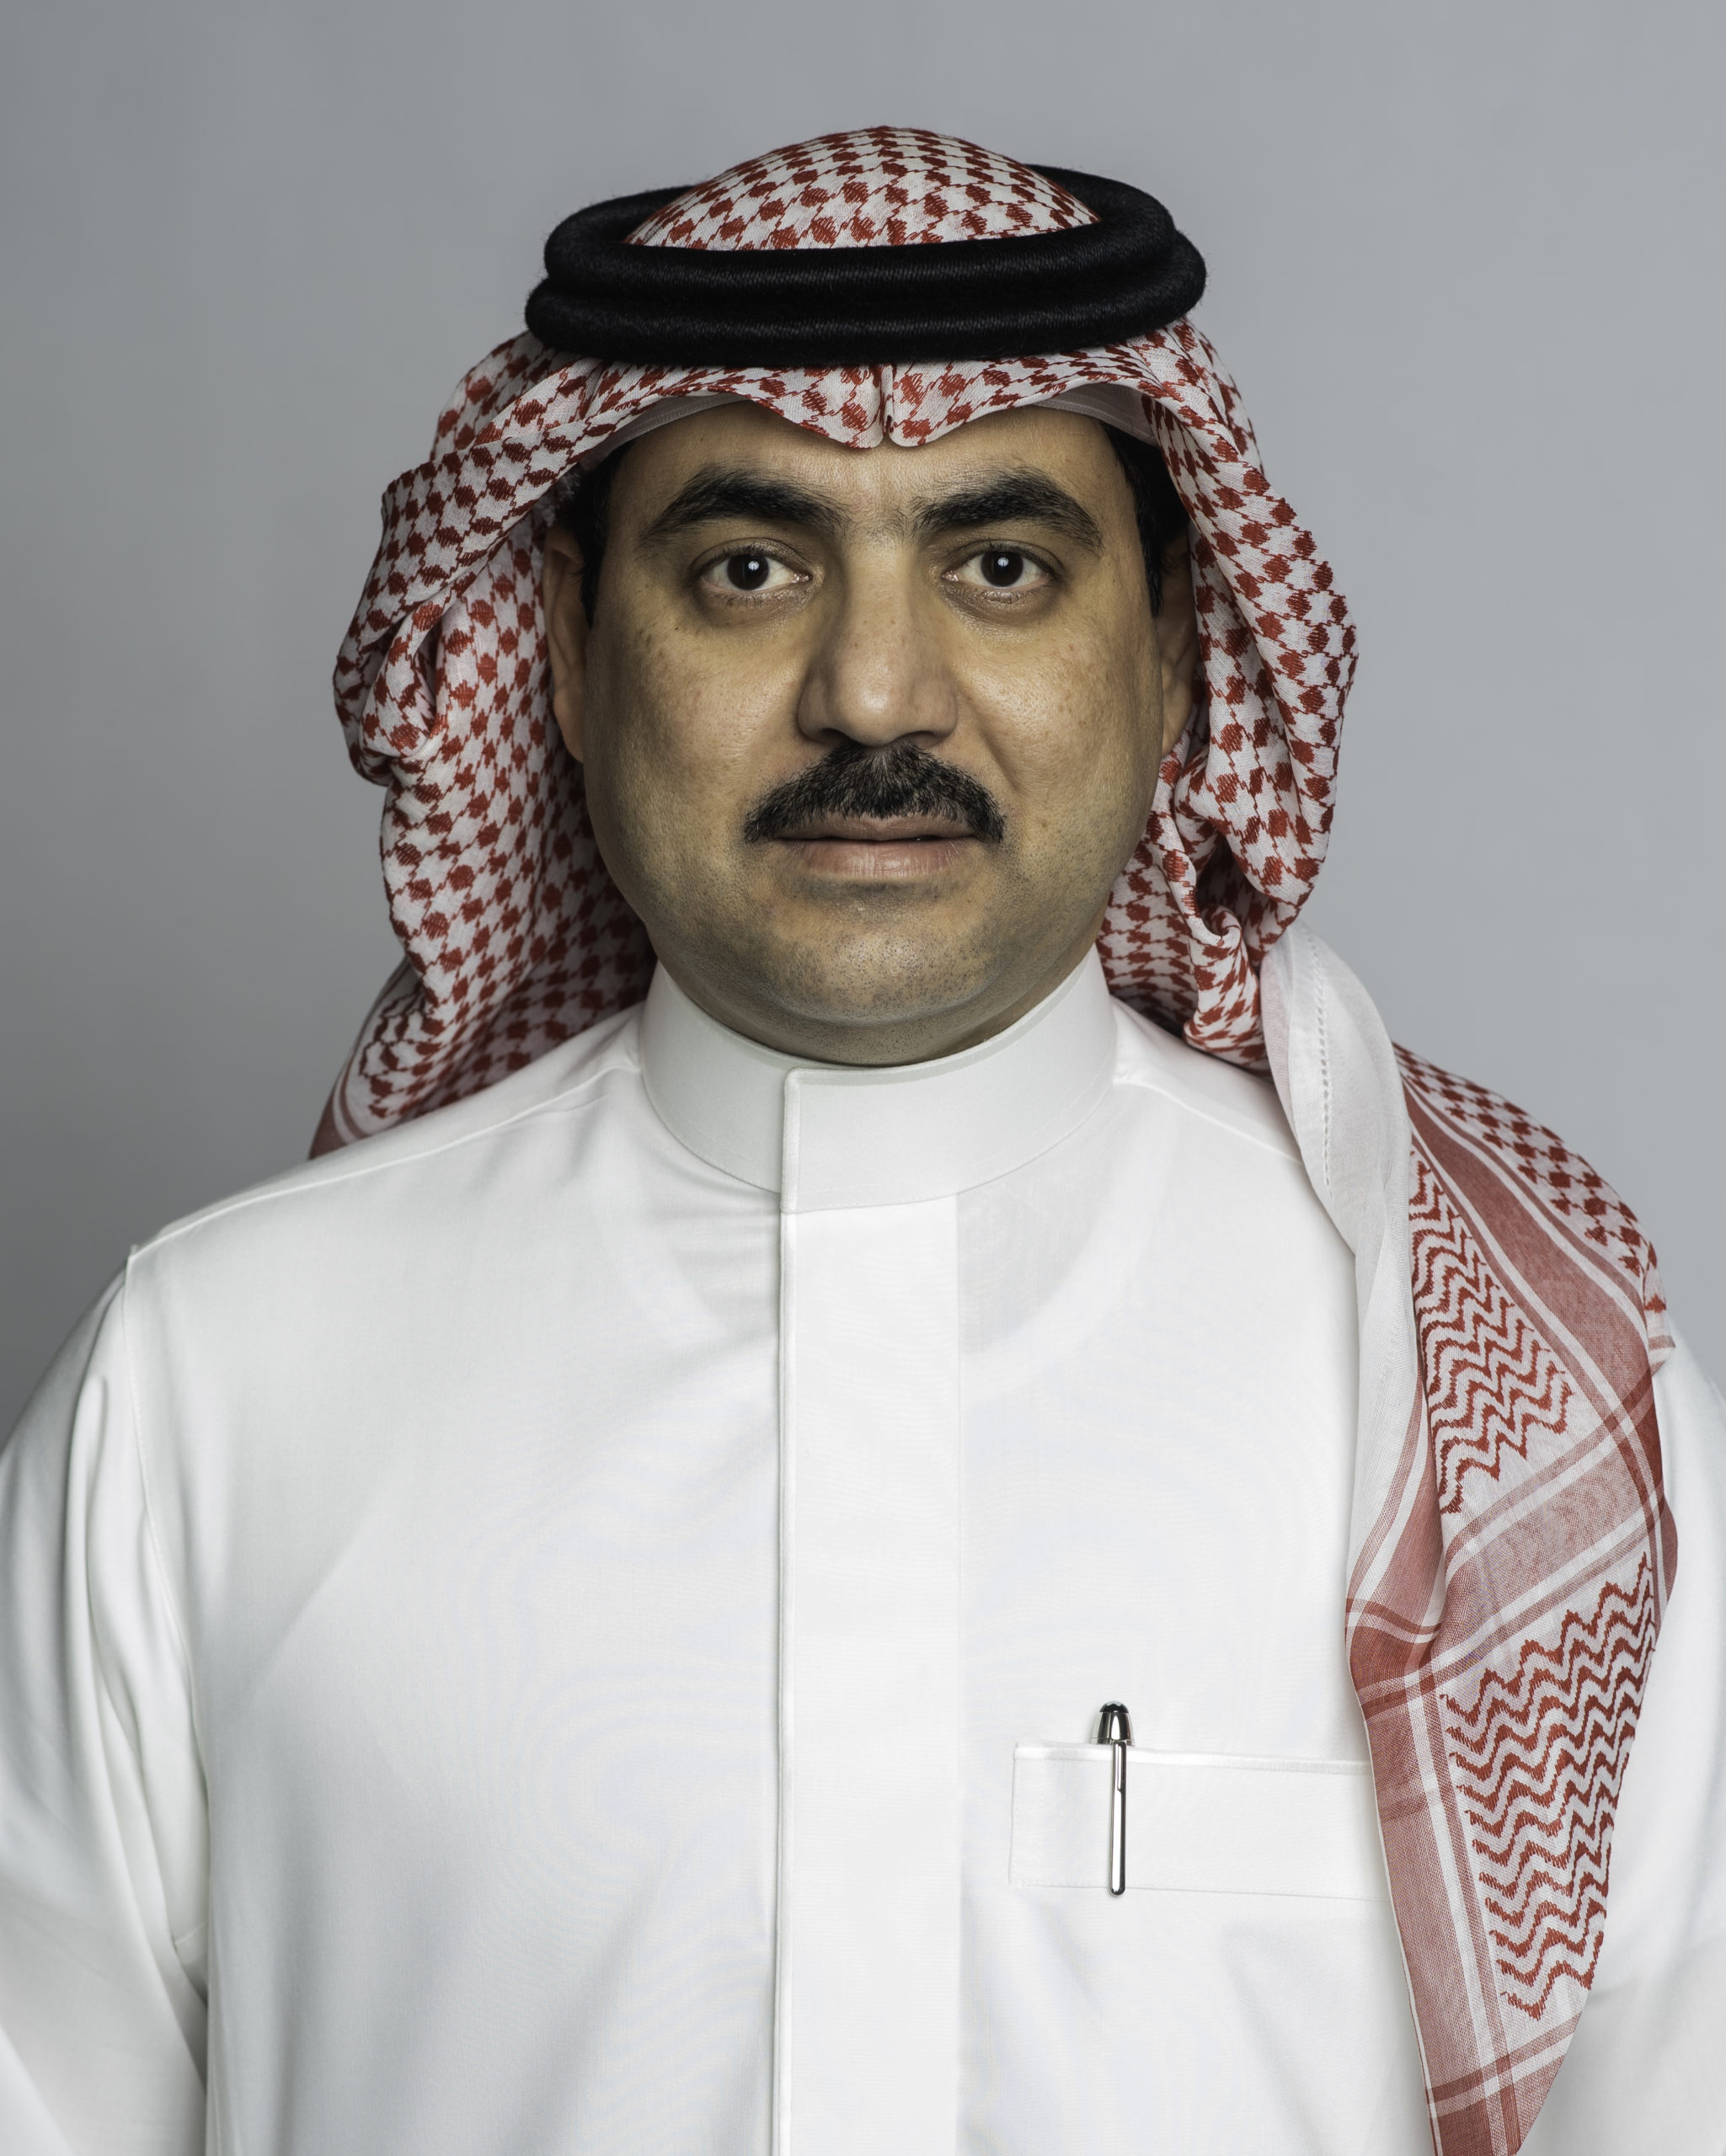 Mr. Turki Abdullah Al Rajhi